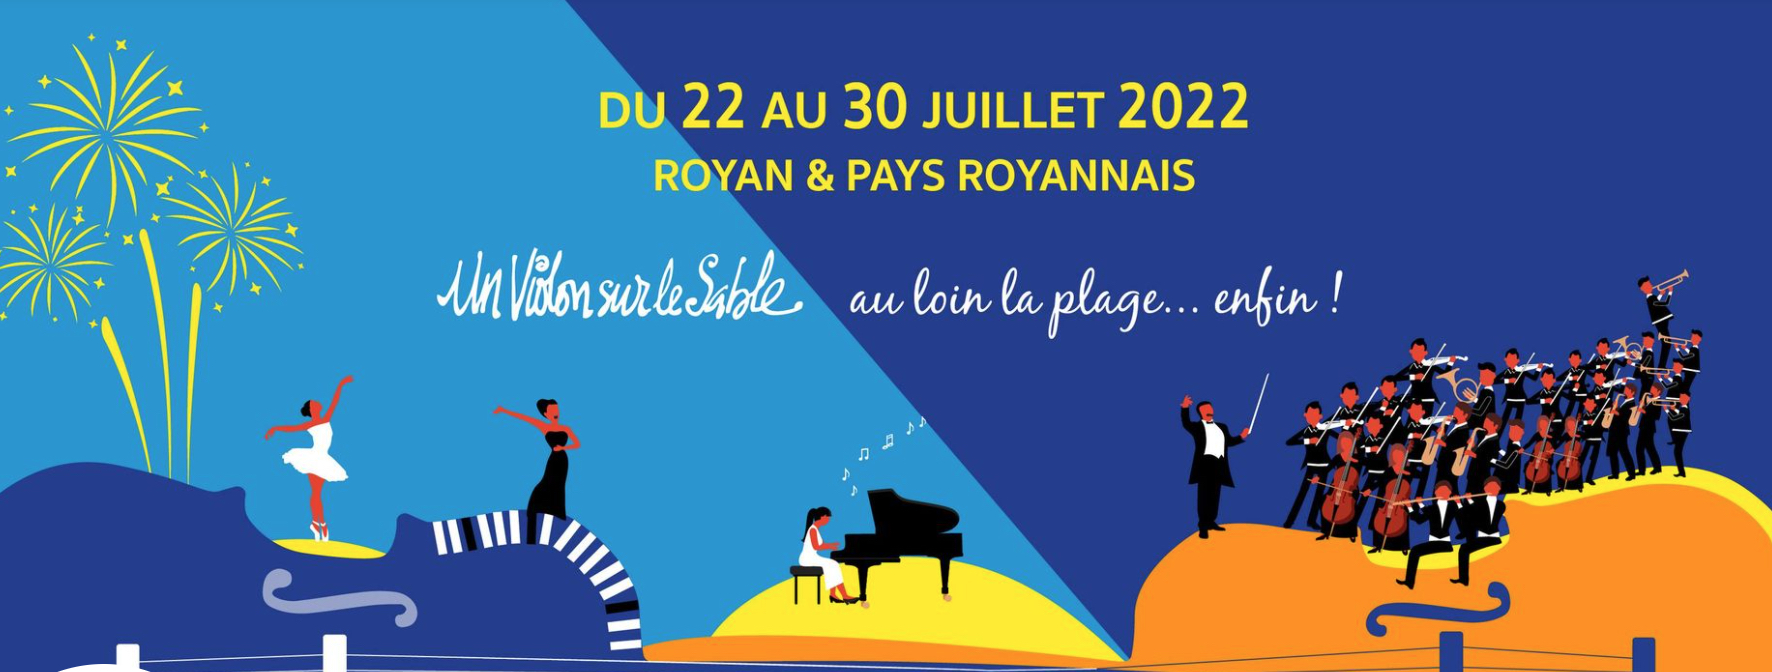 Un violon sur le sable - Royan 25, 28 & 31 July 2020 